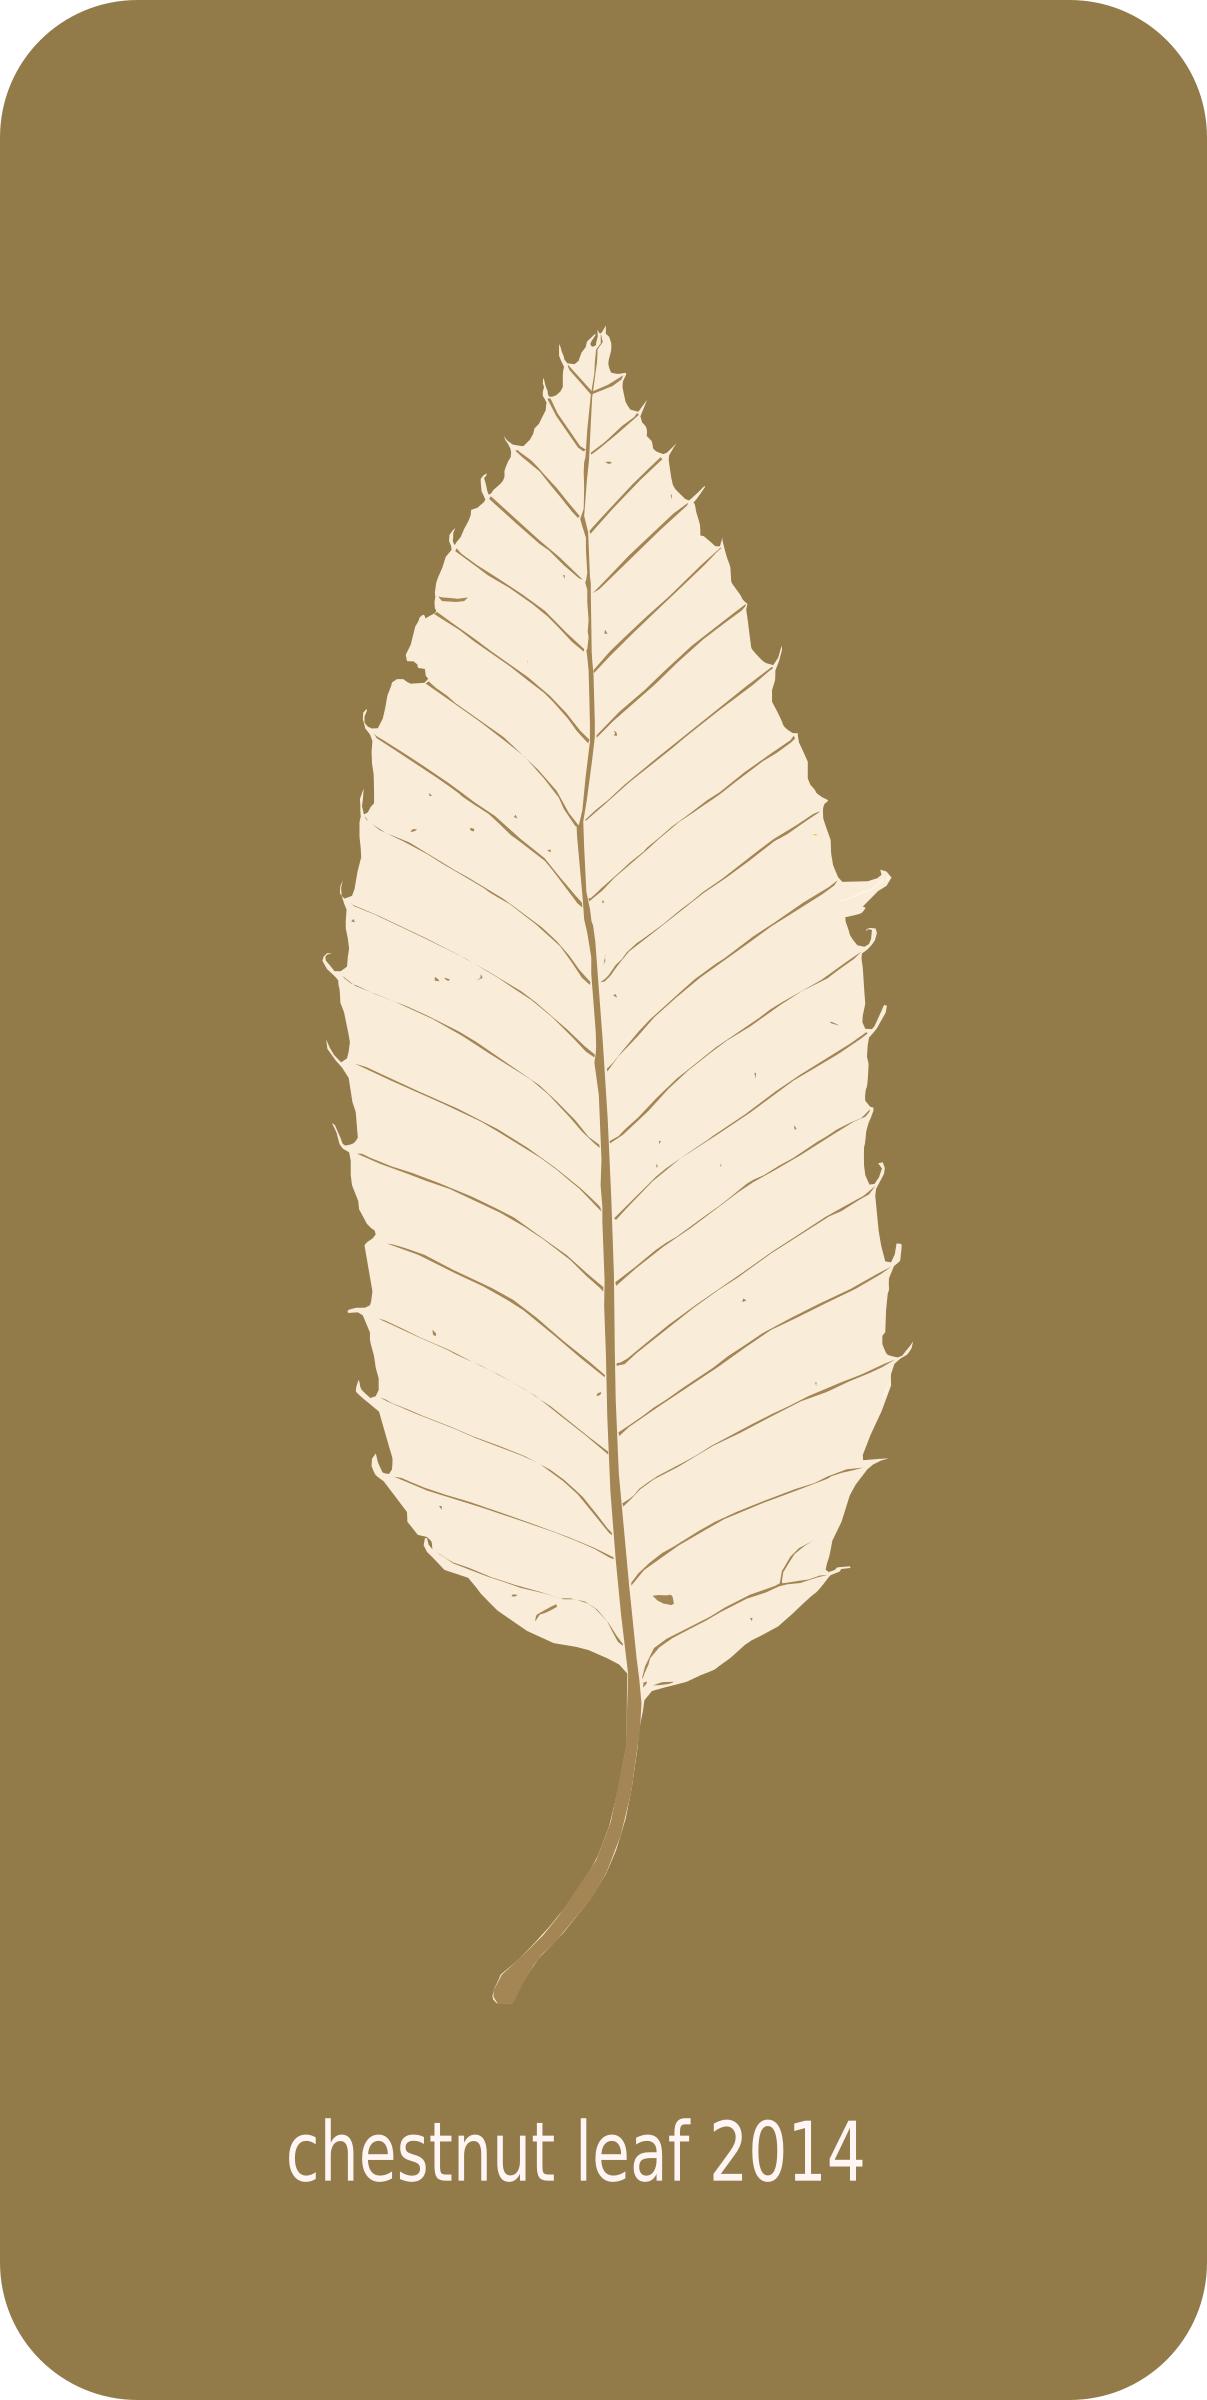 chestnut leaf 2014 png